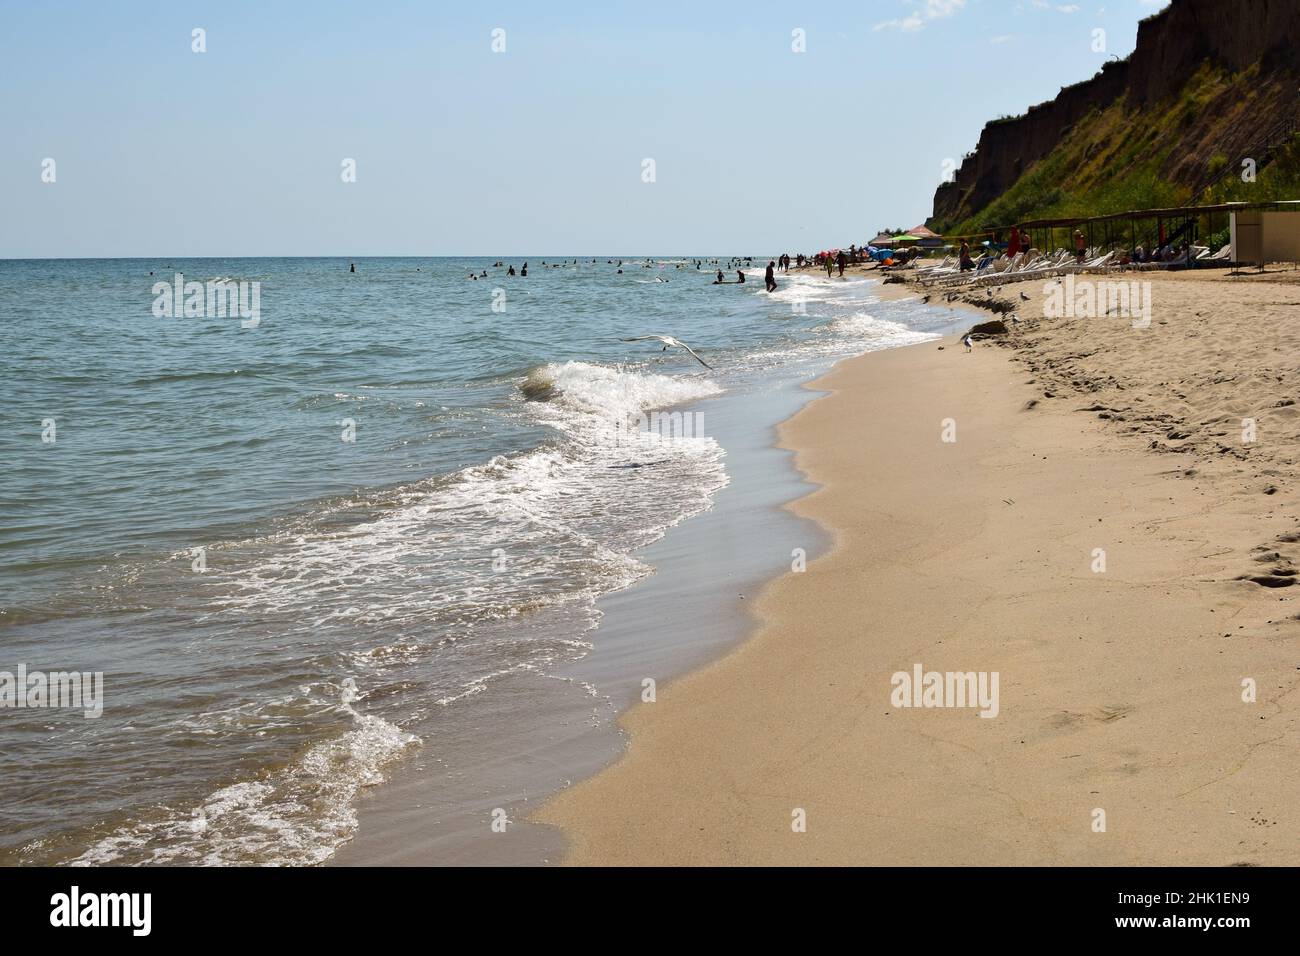 Le onde di mare schiumose rotolano sulla spiaggia di sabbia diurna. I turisti si prendono il sole e nuotano in lontananza Foto Stock